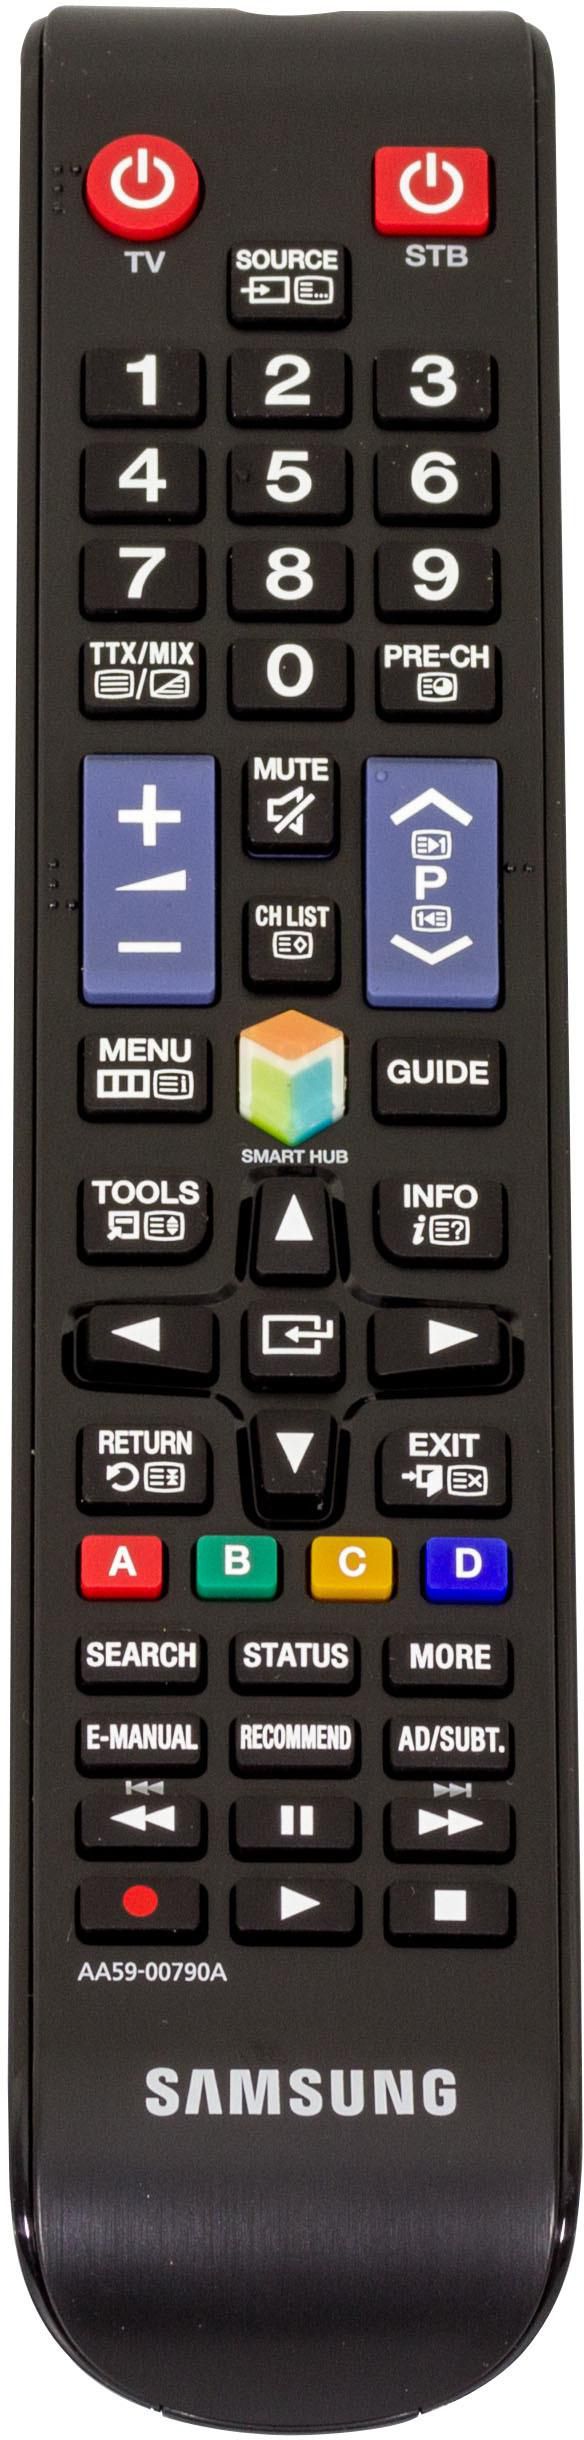 Samsung Remote Control TM1250 - W124644881